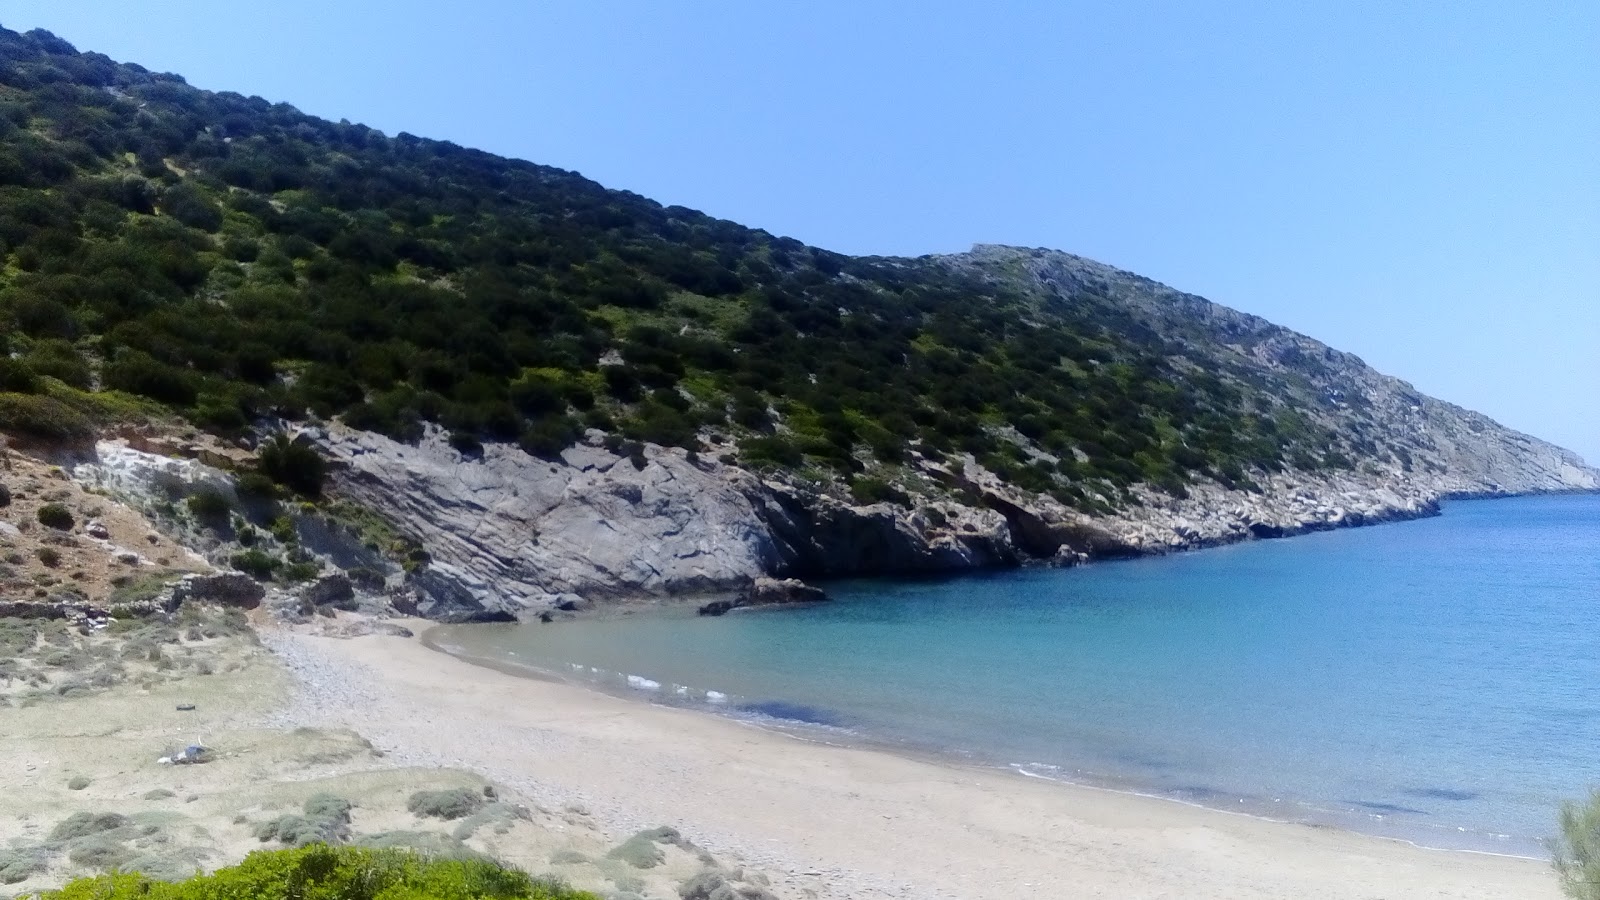 Foto di Aetos beach ubicato in zona naturale